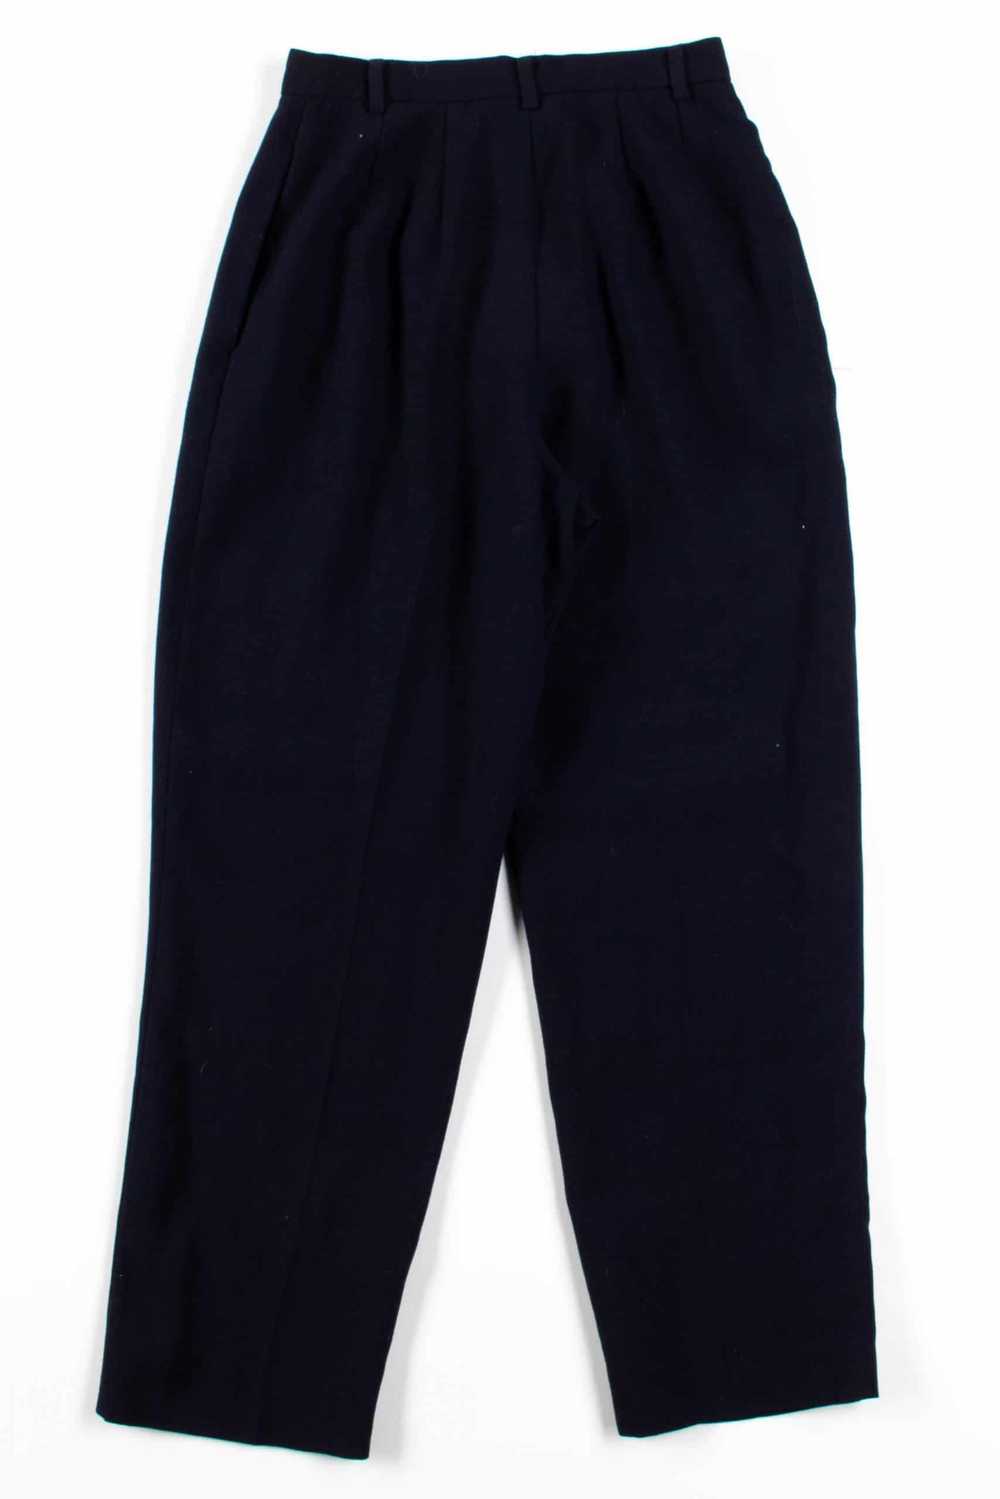 Black Pleated Pants (sz. 4) - image 3